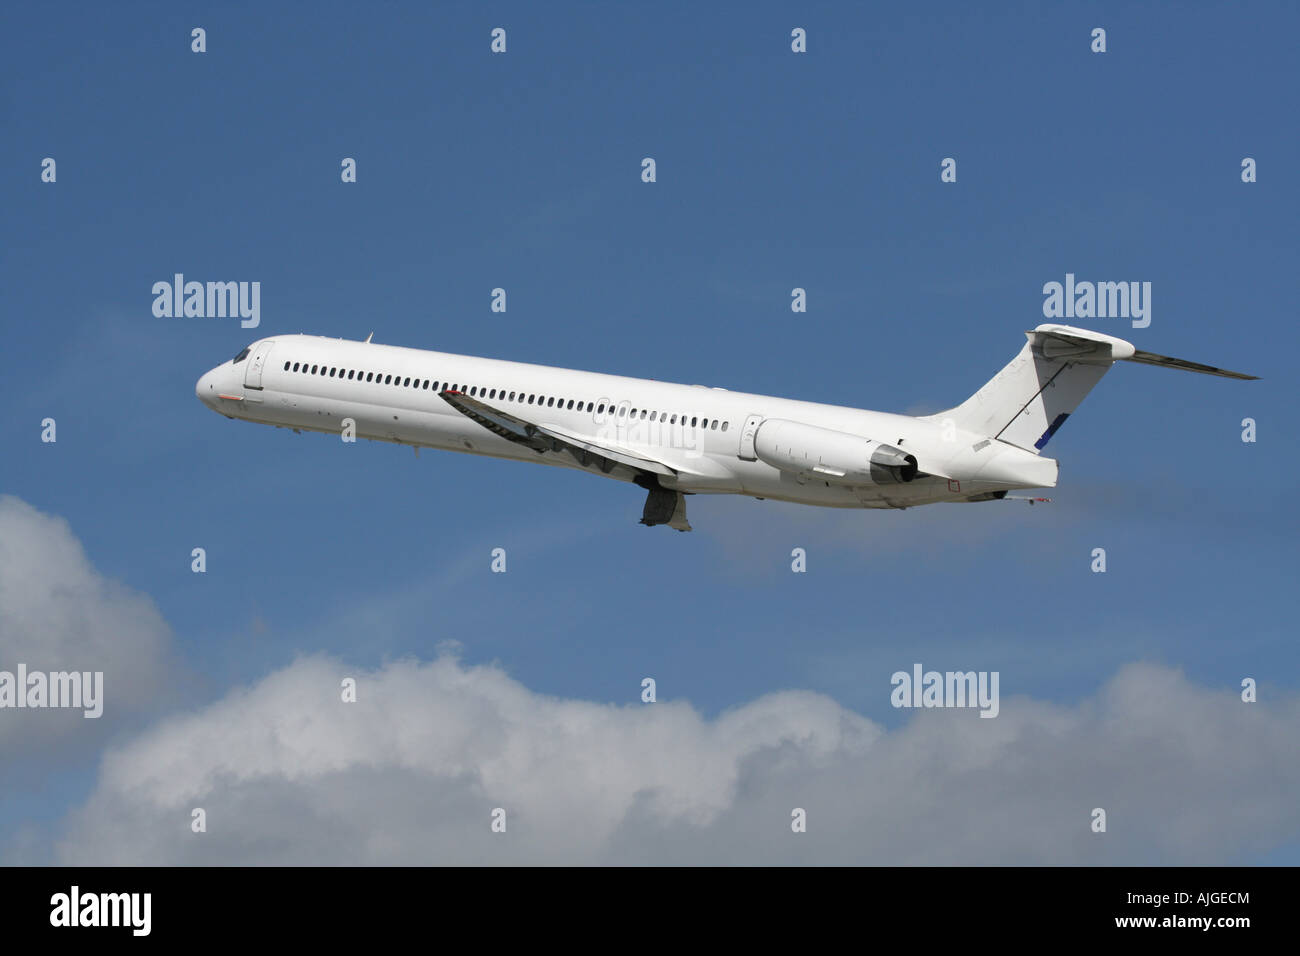 Le transport aérien commercial. McDonnell Douglas MD-83 passenger jet avion dans l'air. Pas de livrée et marque privative retiré. Banque D'Images